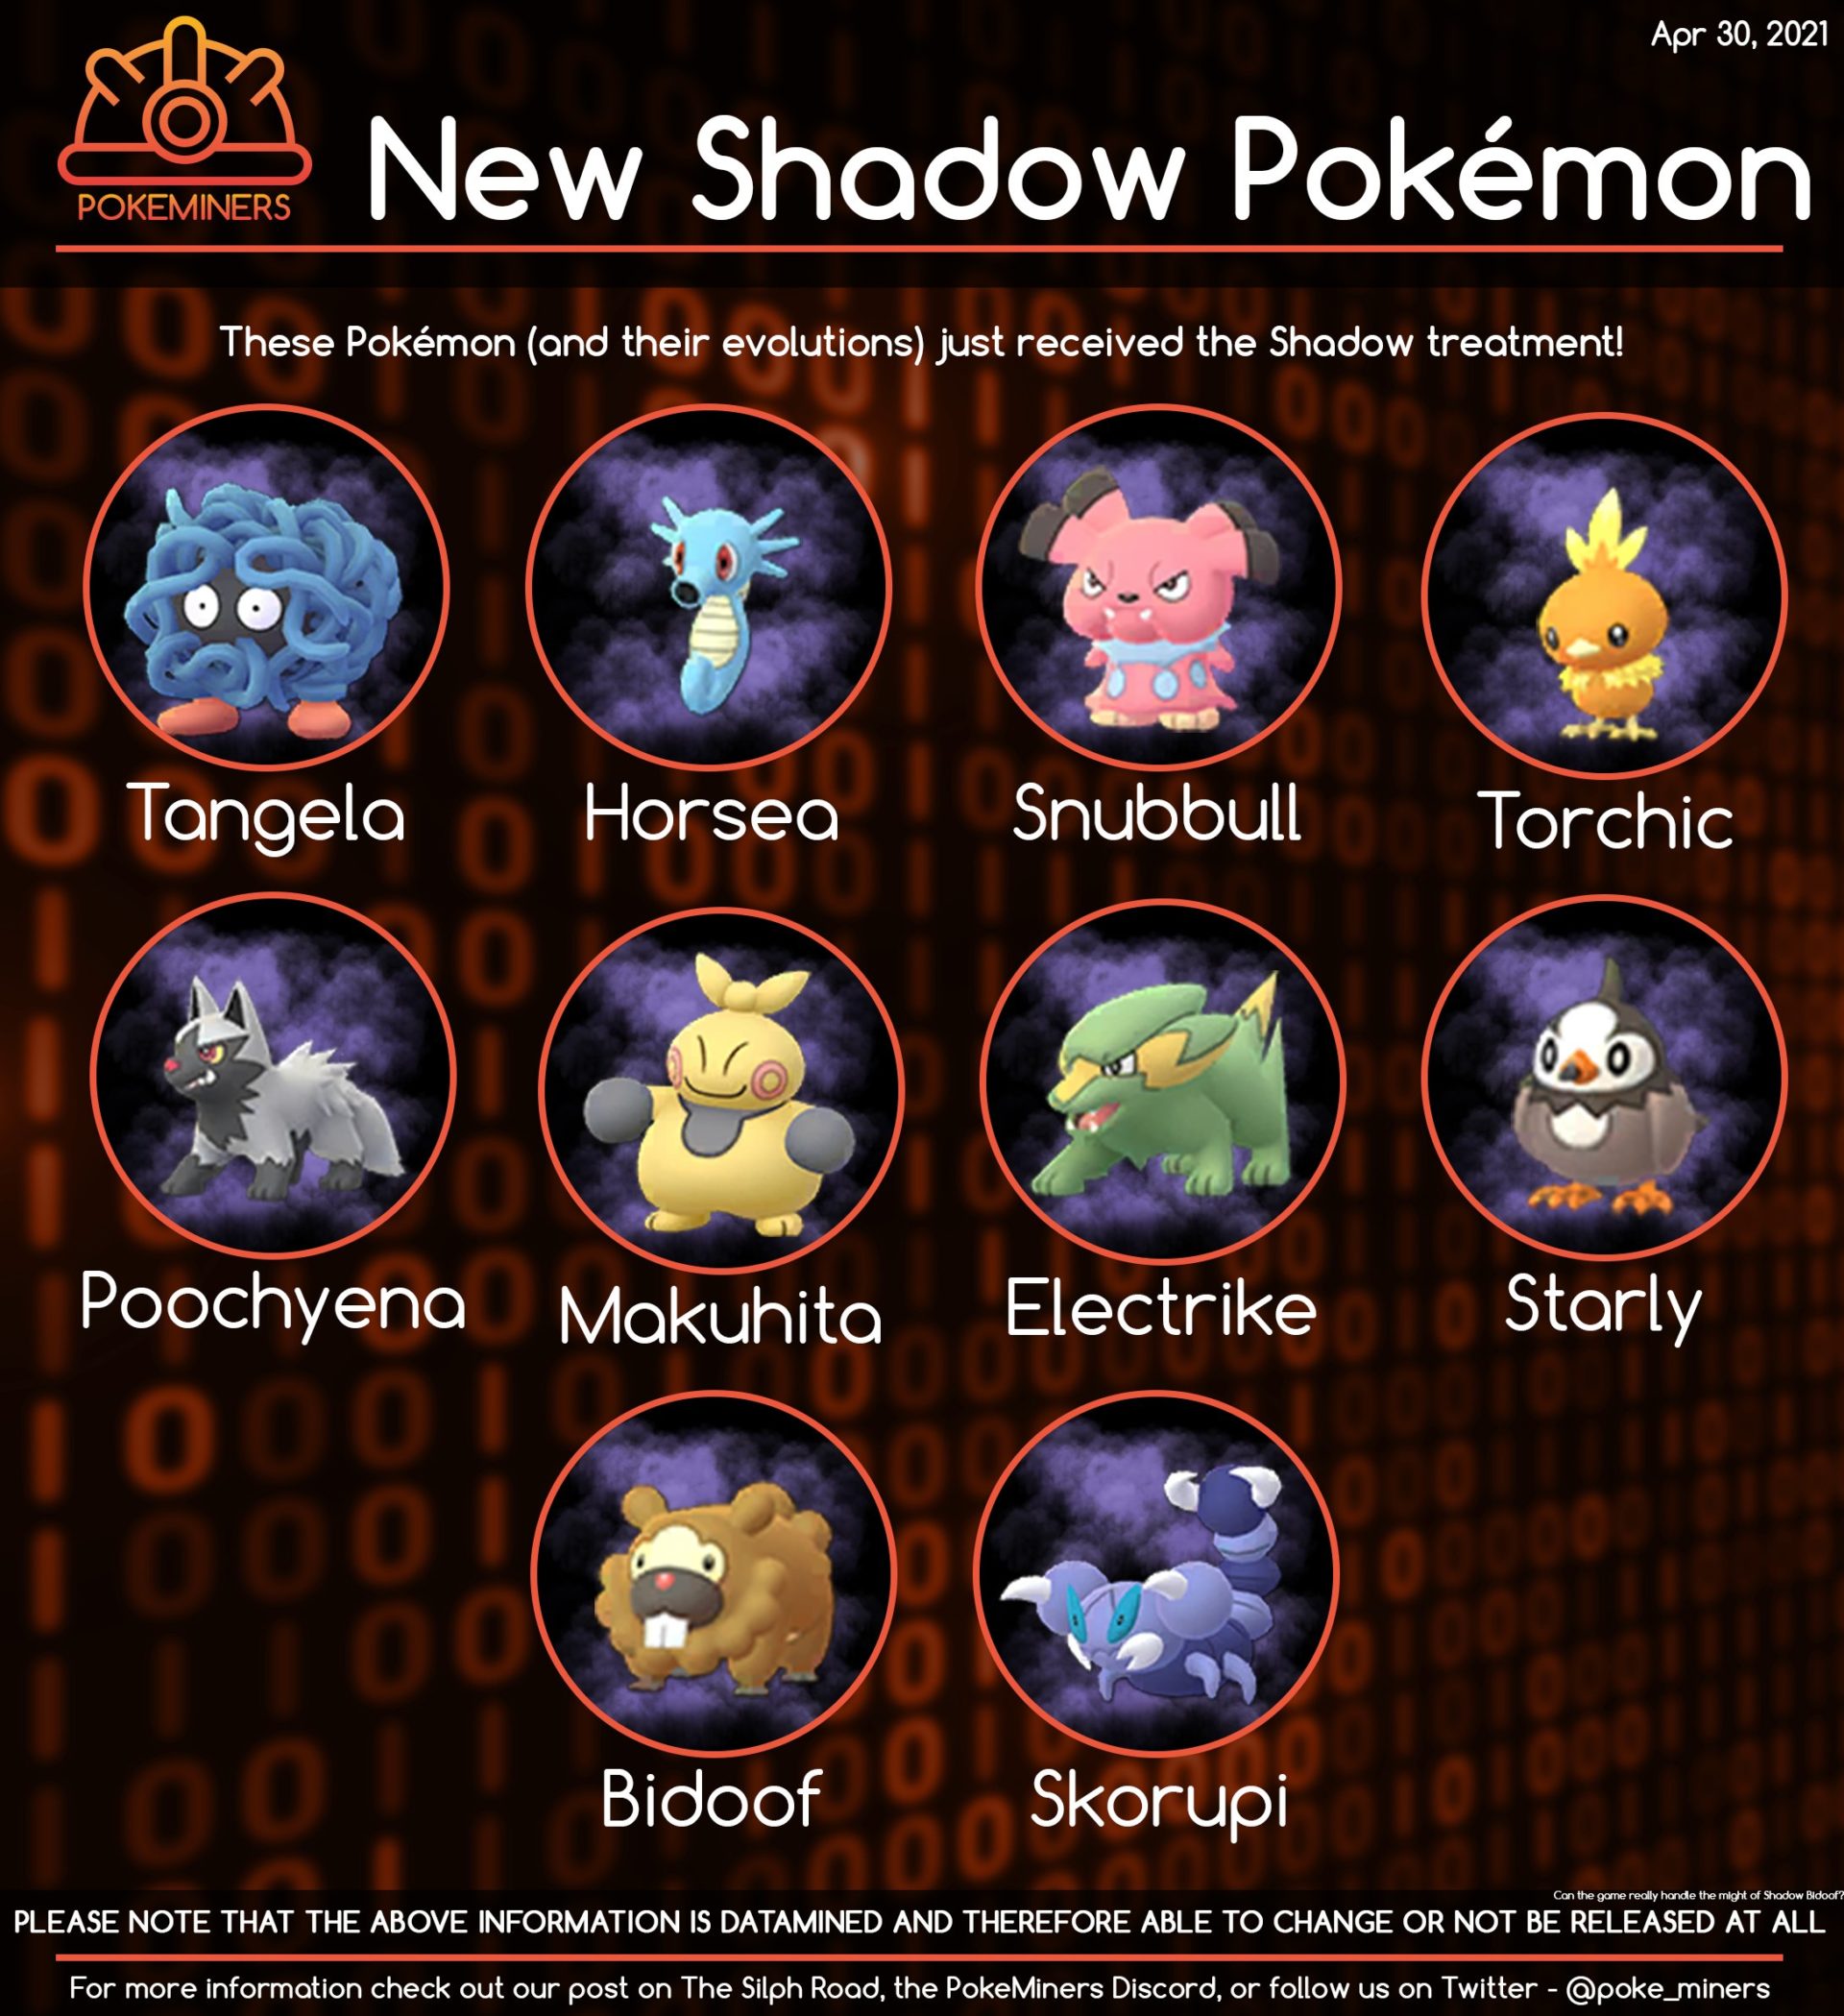 New Potential PvP Shadow Pokémon Pokémon GO Hub